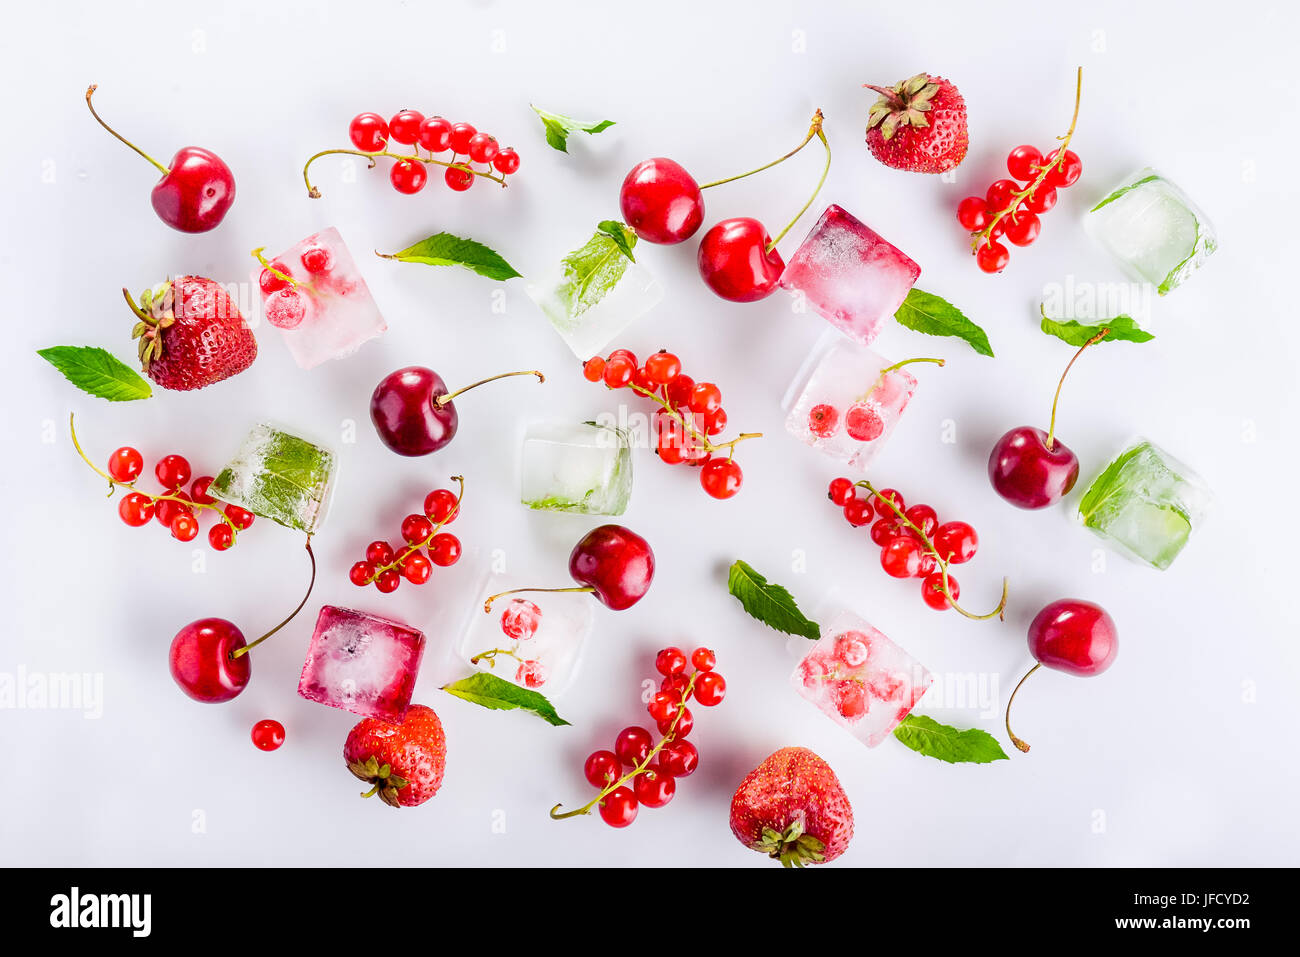 Draufsicht auf Eiswürfel mit frischen Beeren unter nicht gefrorene Kirschen, Erdbeeren und Minze Blätter auf dem weißen Hintergrund. Selektiven Fokus Stockfoto